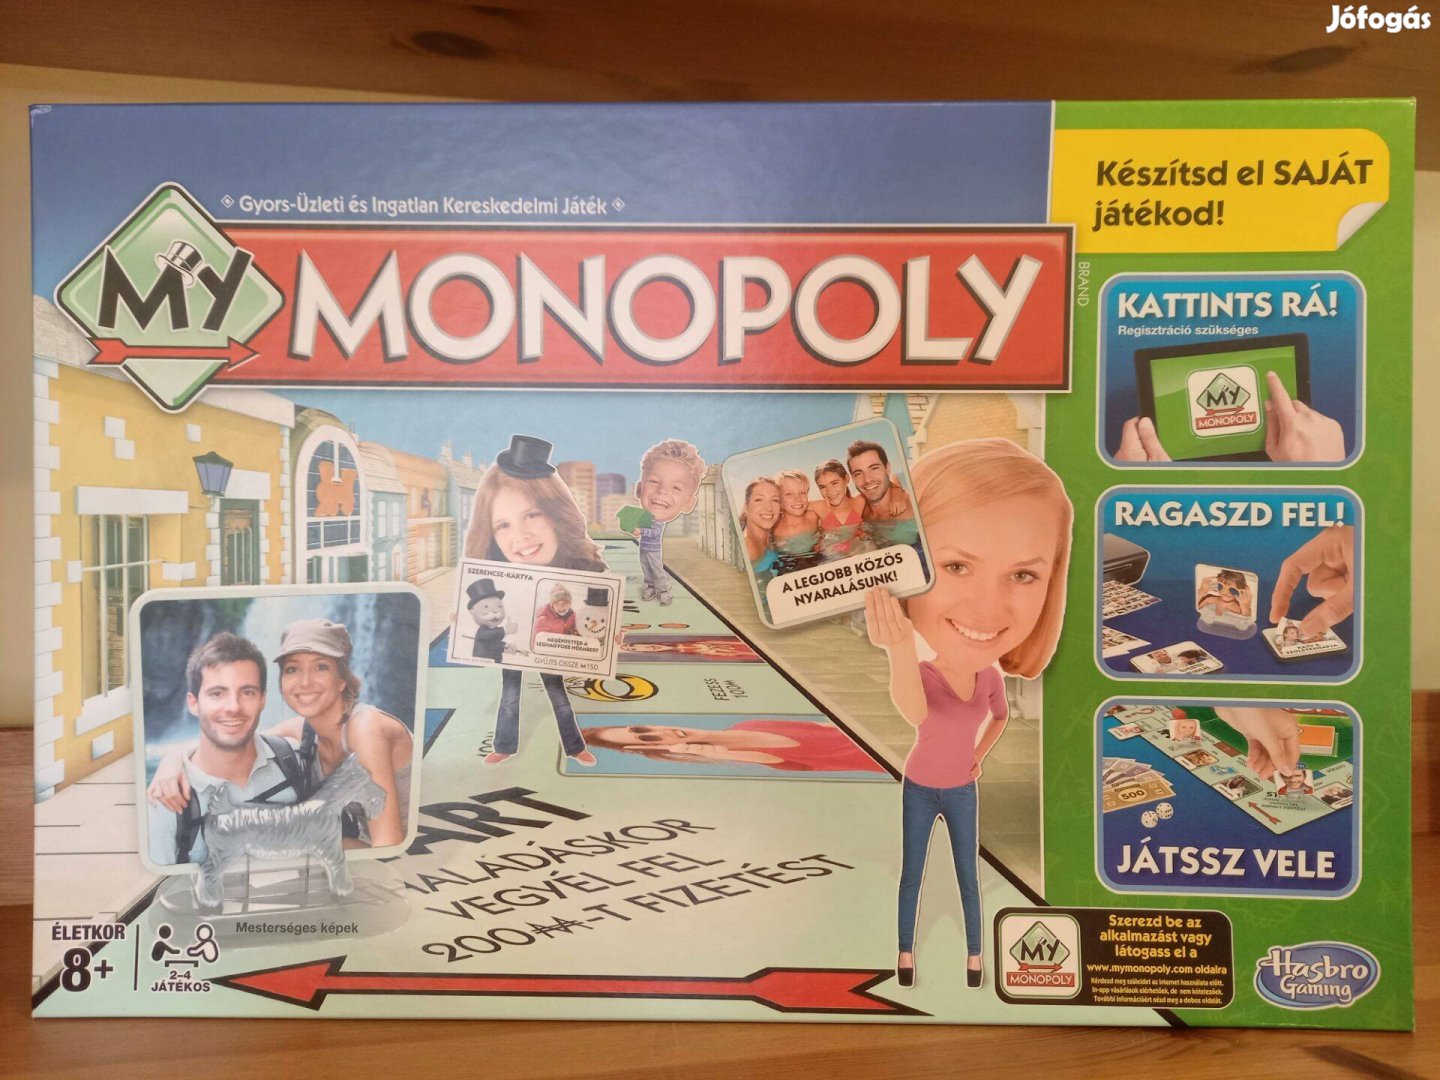 Monopoly - Készítsd el saját játokod!